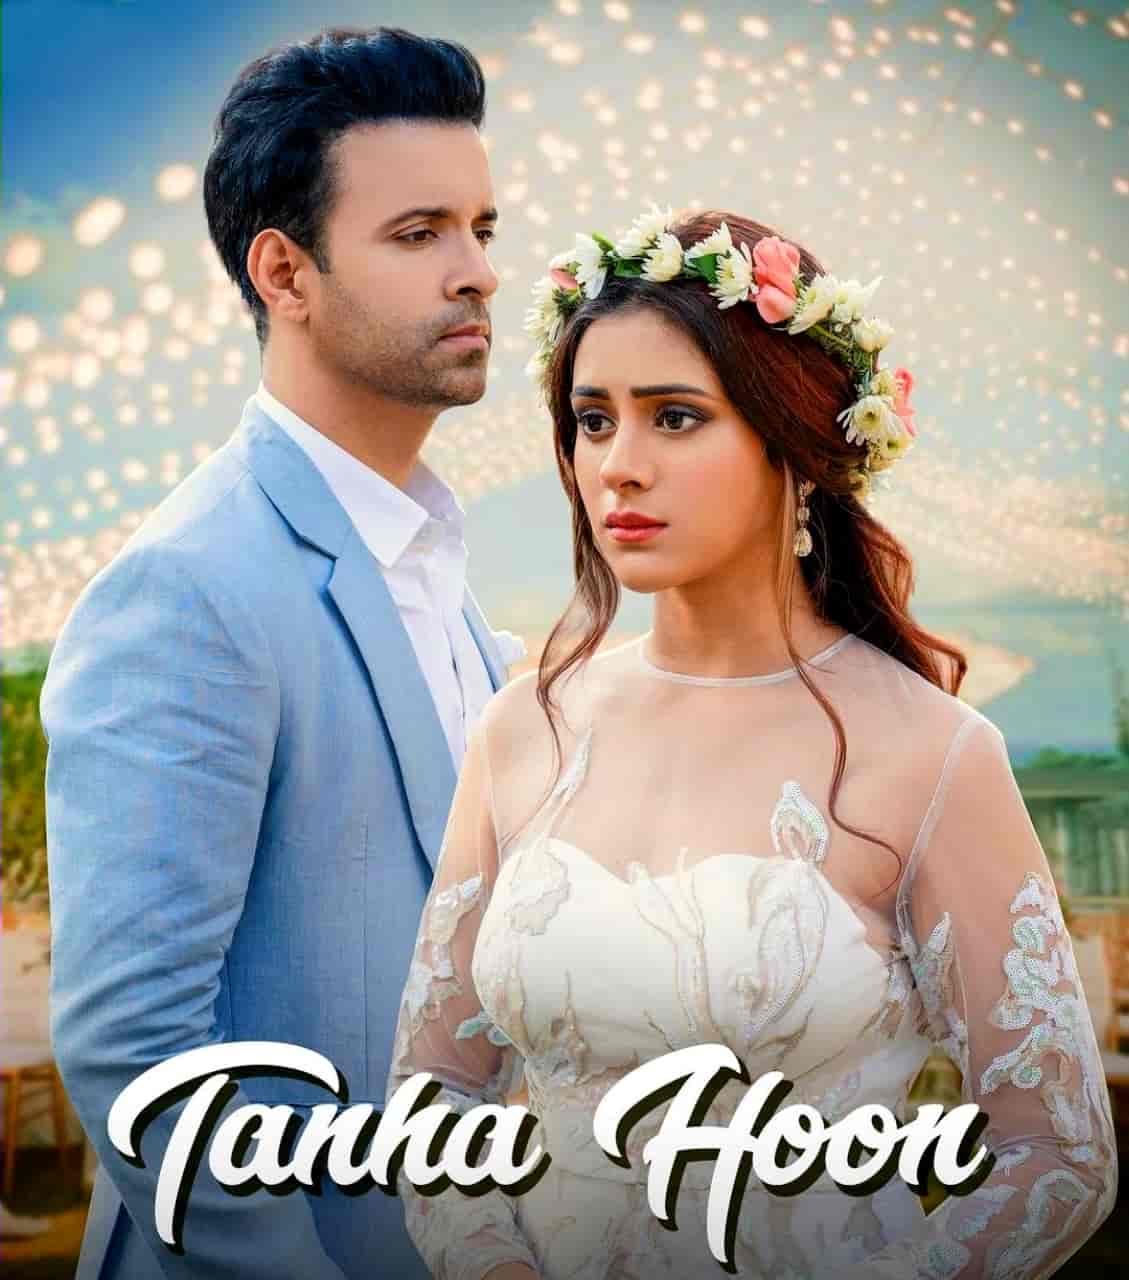 Tanha Hoon Hindi Song Image Features Aamir Ali And Hiba Nawab